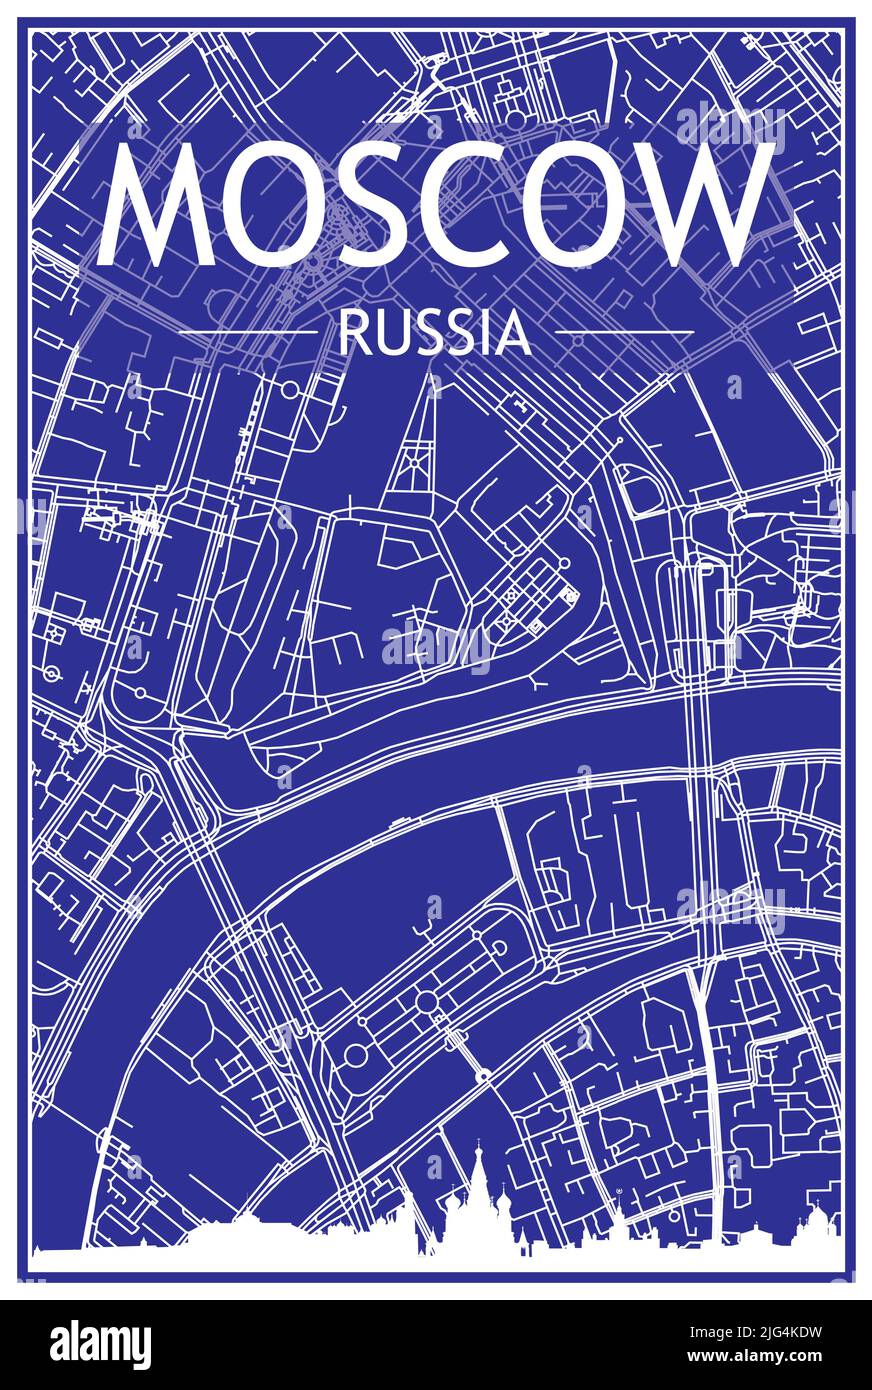 Technische Zeichnung Ausdruck Stadtplakat mit Panorama-Skyline und handgezeichneten Straßen Netzwerk auf blauem Hintergrund der Innenstadt VON MOSKAU, RUSSLAND Stock Vektor